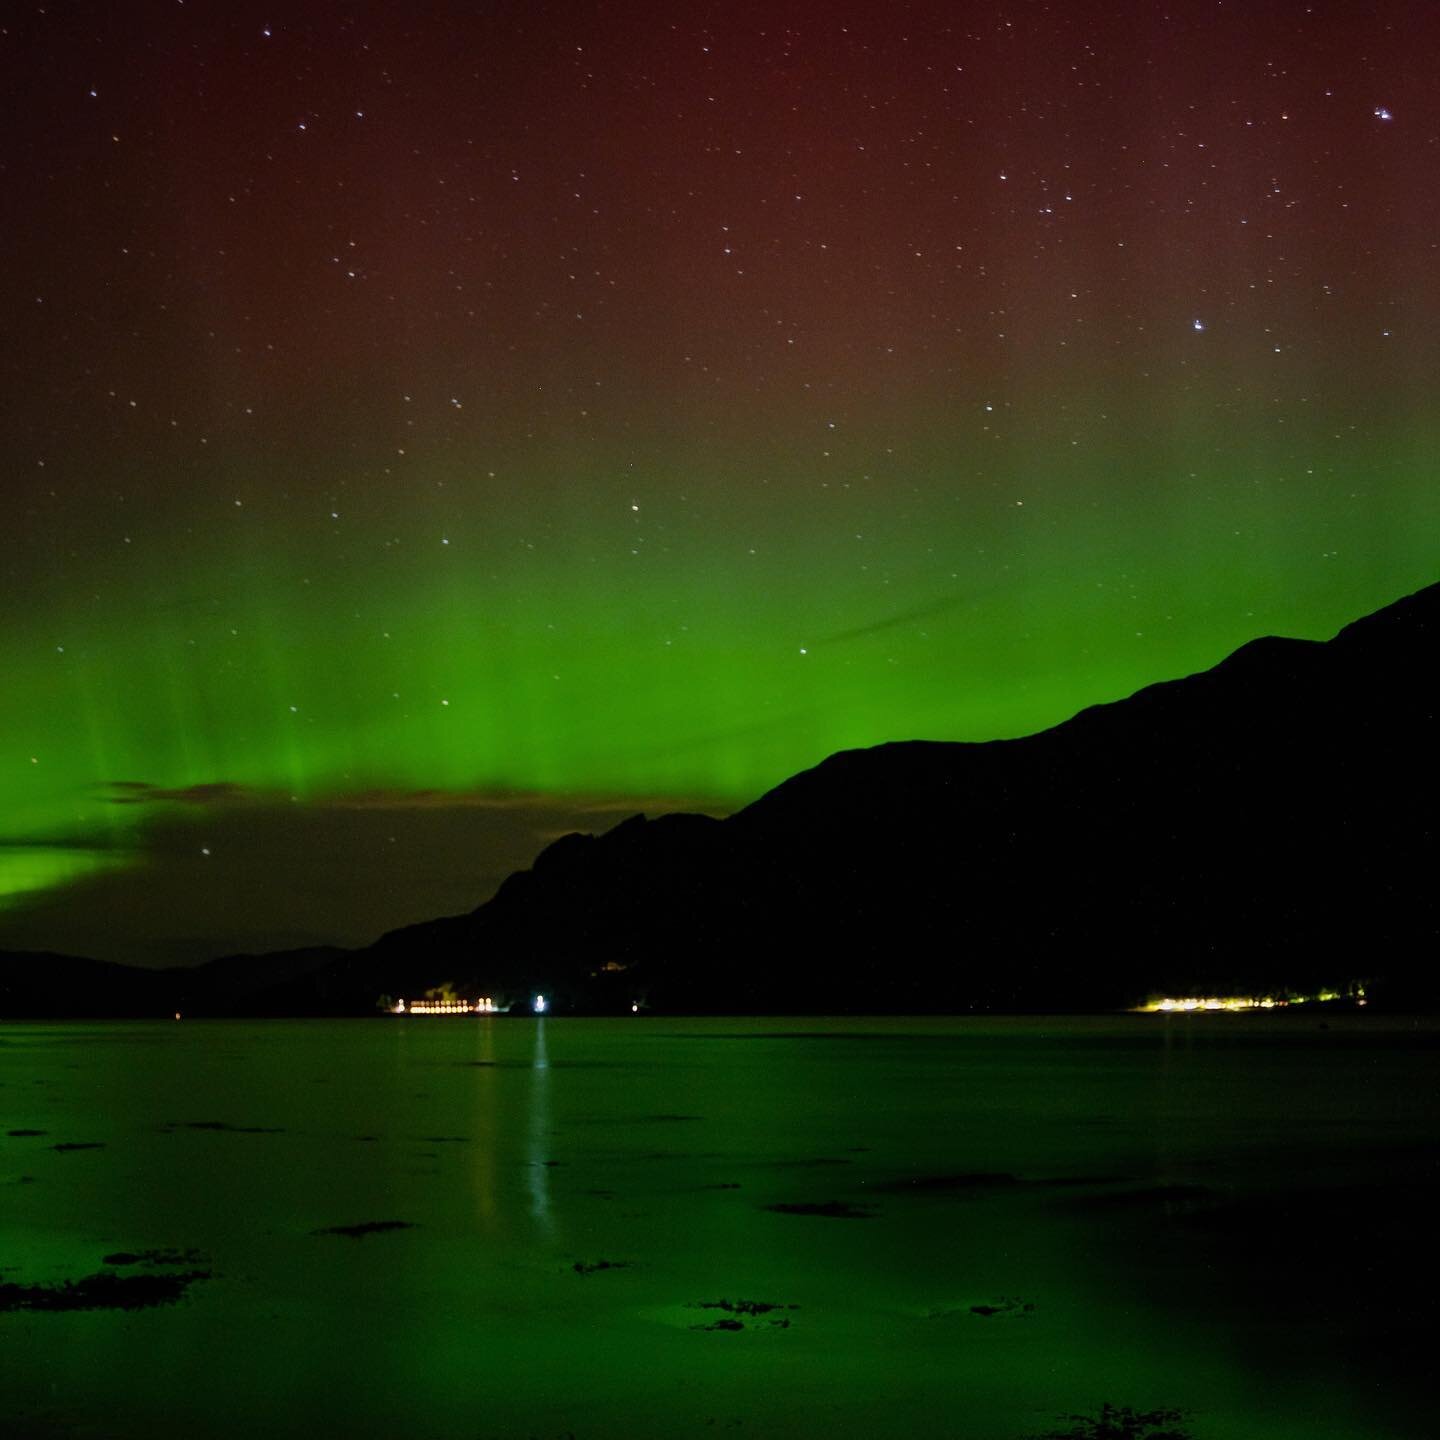 The aurora borealis over Loch Duich last night. #lochduich #scotland #scottishhighlands #scotlandtravel #aurora #auroraborealis